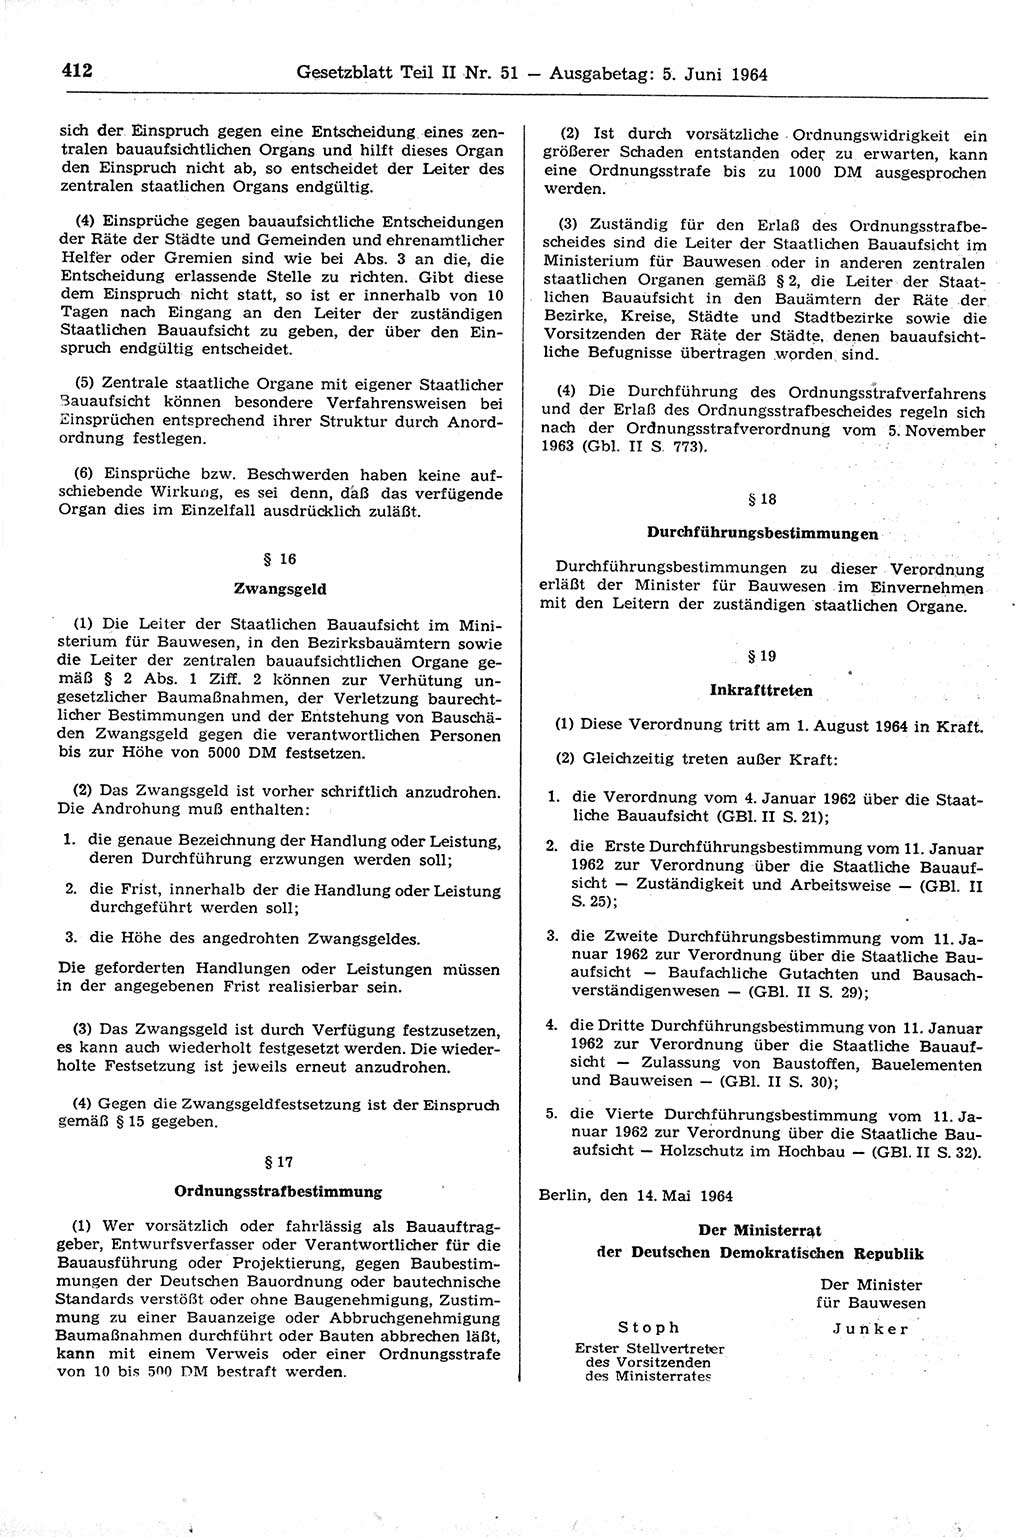 Gesetzblatt (GBl.) der Deutschen Demokratischen Republik (DDR) Teil ⅠⅠ 1964, Seite 412 (GBl. DDR ⅠⅠ 1964, S. 412)